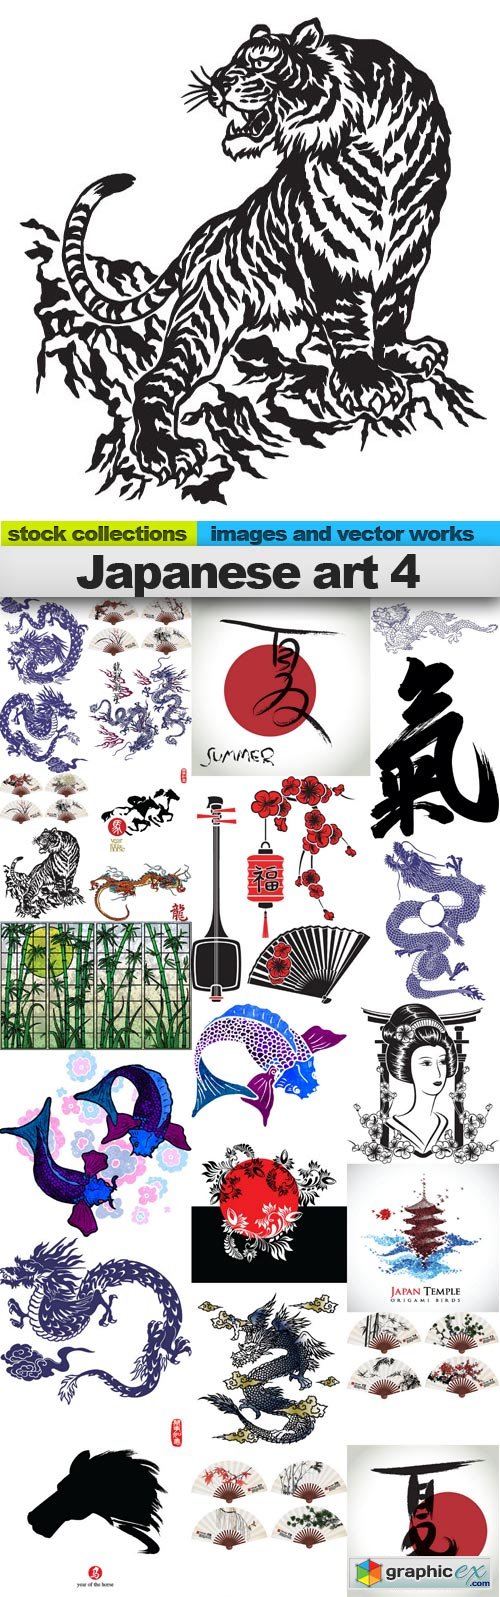 Japanese art 4,25 x EPS